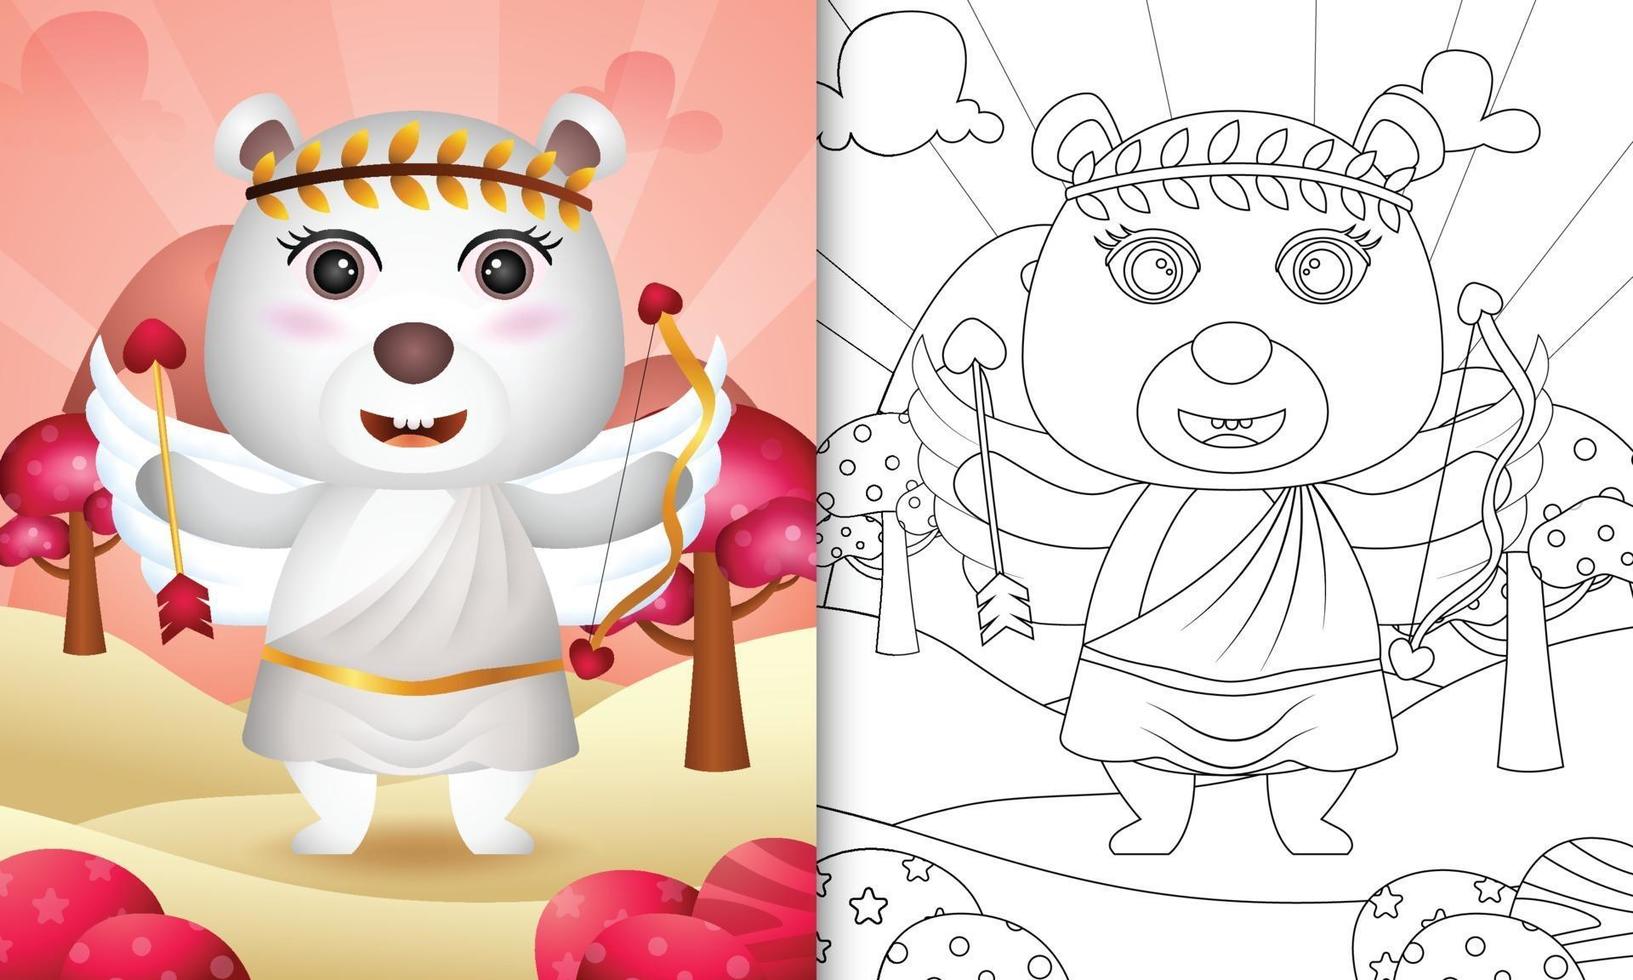 Malbuch für Kinder mit einem niedlichen Eisbärenengel unter Verwendung des themenorientierten Valentinstags des Amor-Kostüms vektor